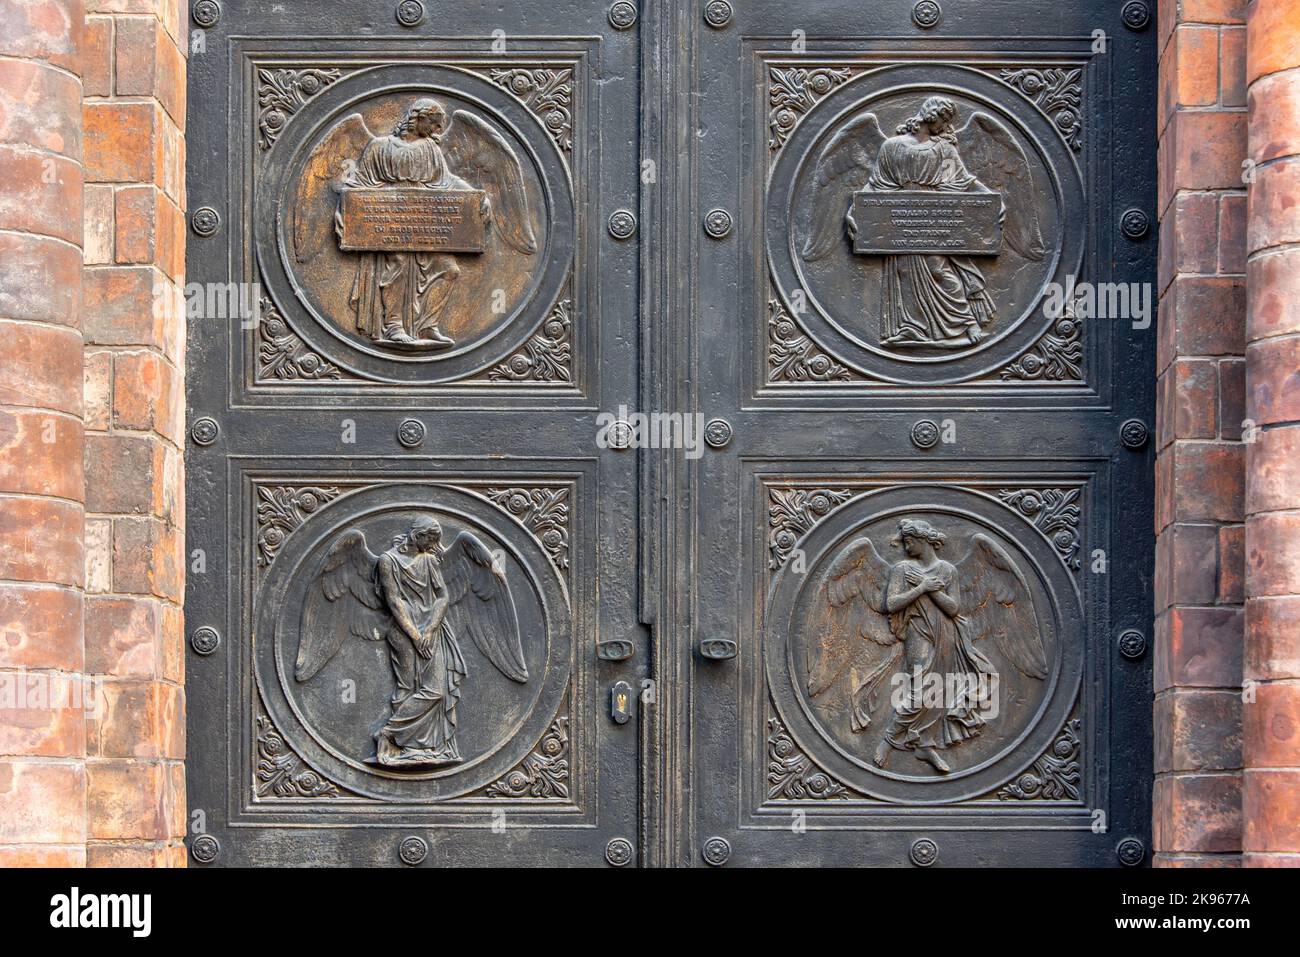 Angelo intagliato sulle porte della chiesa a Berlino, Germania. Particolare del pannello metallico sulla porta del tempio, ingresso alla chiesa. Foto Stock